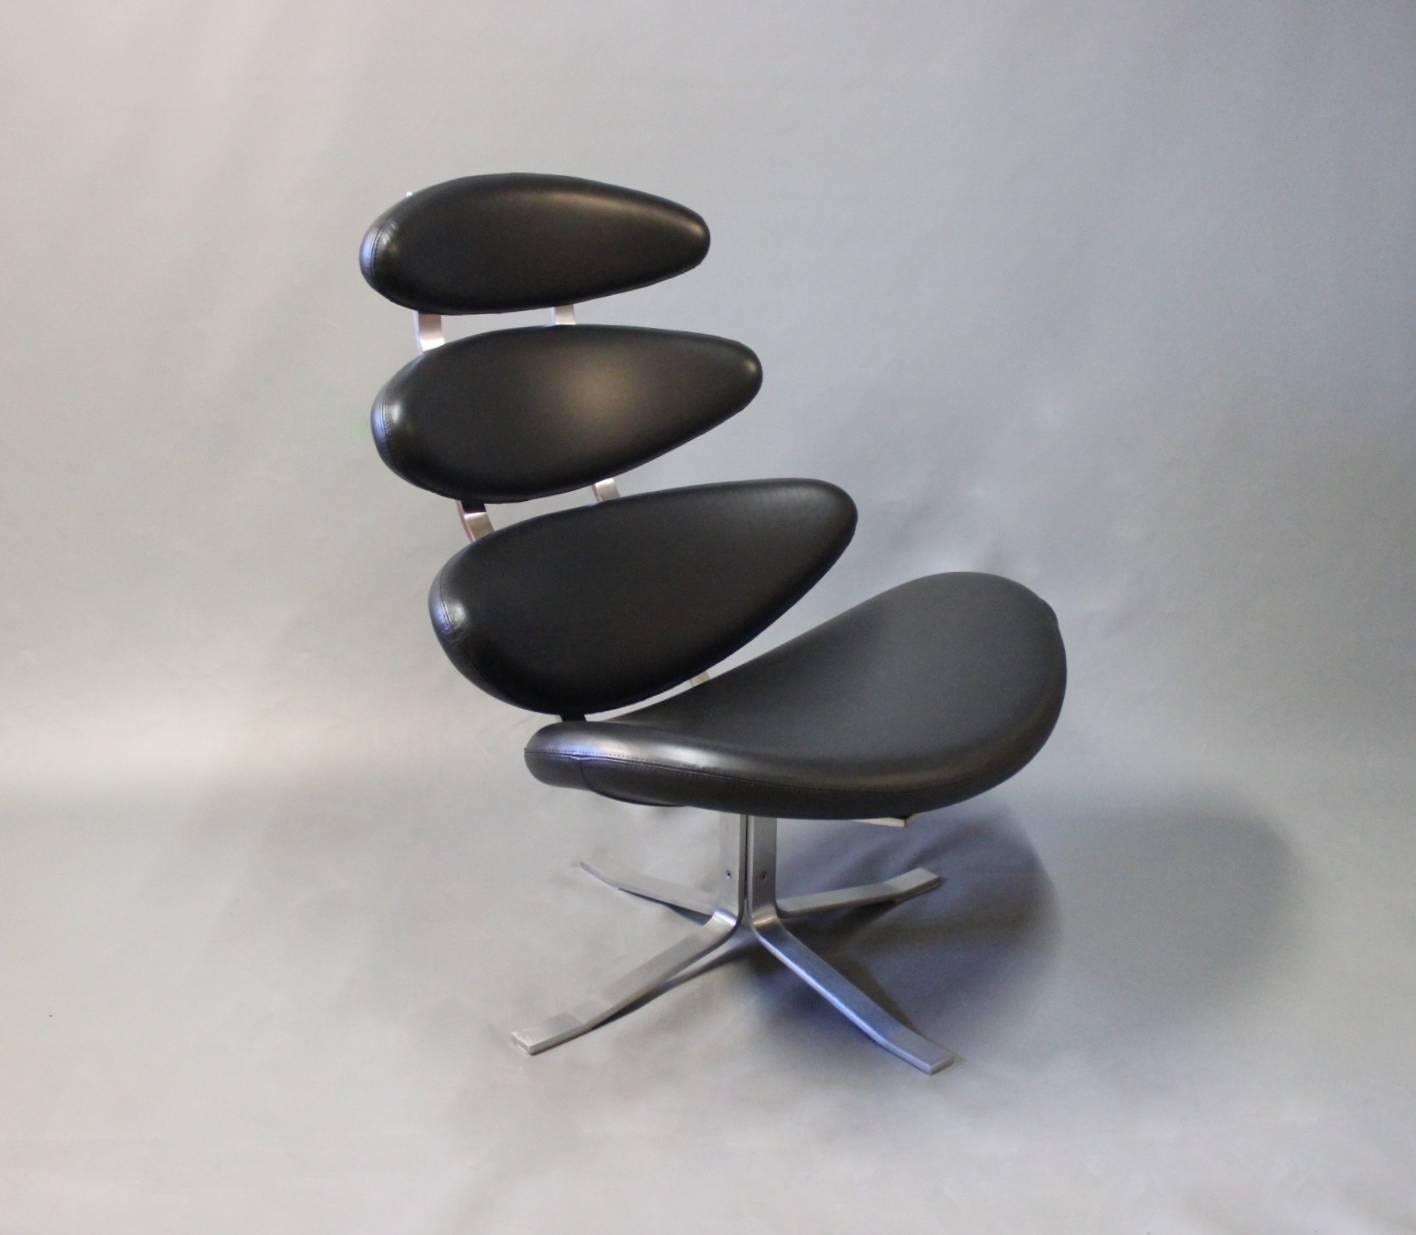 Der Corona-Sessel, Modell EJ 5, entworfen von dem talentierten Poul M. Volther im Jahr 1964 und hergestellt von Erik Jørgensen. Der mit schwarzem Cava-Leder gepolsterte Sessel stellt eine perfekte Balance zwischen Komfort und Ästhetik dar.

Poul M.